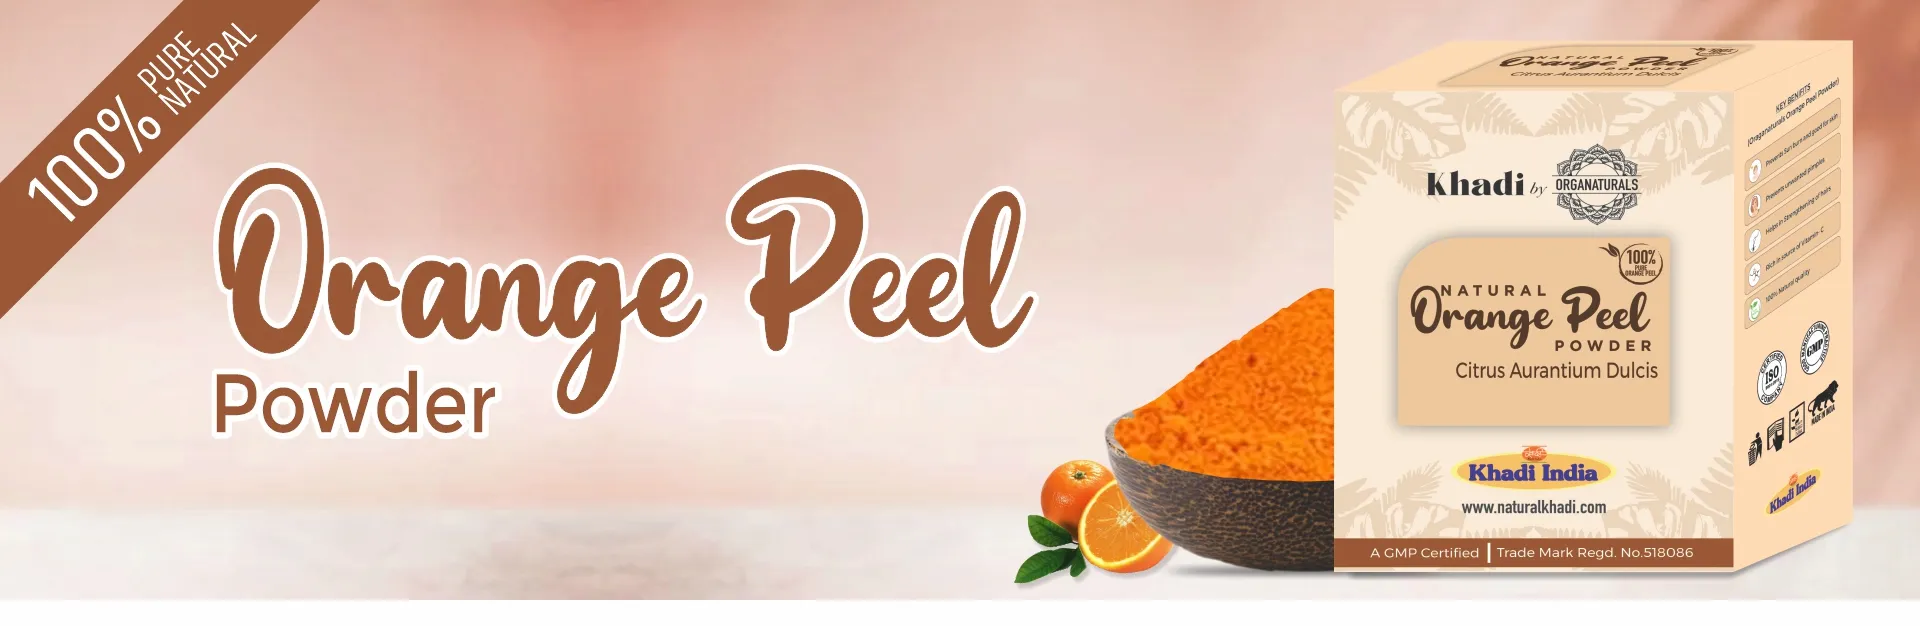 Orange Peel Powder - www.dkihenna.com